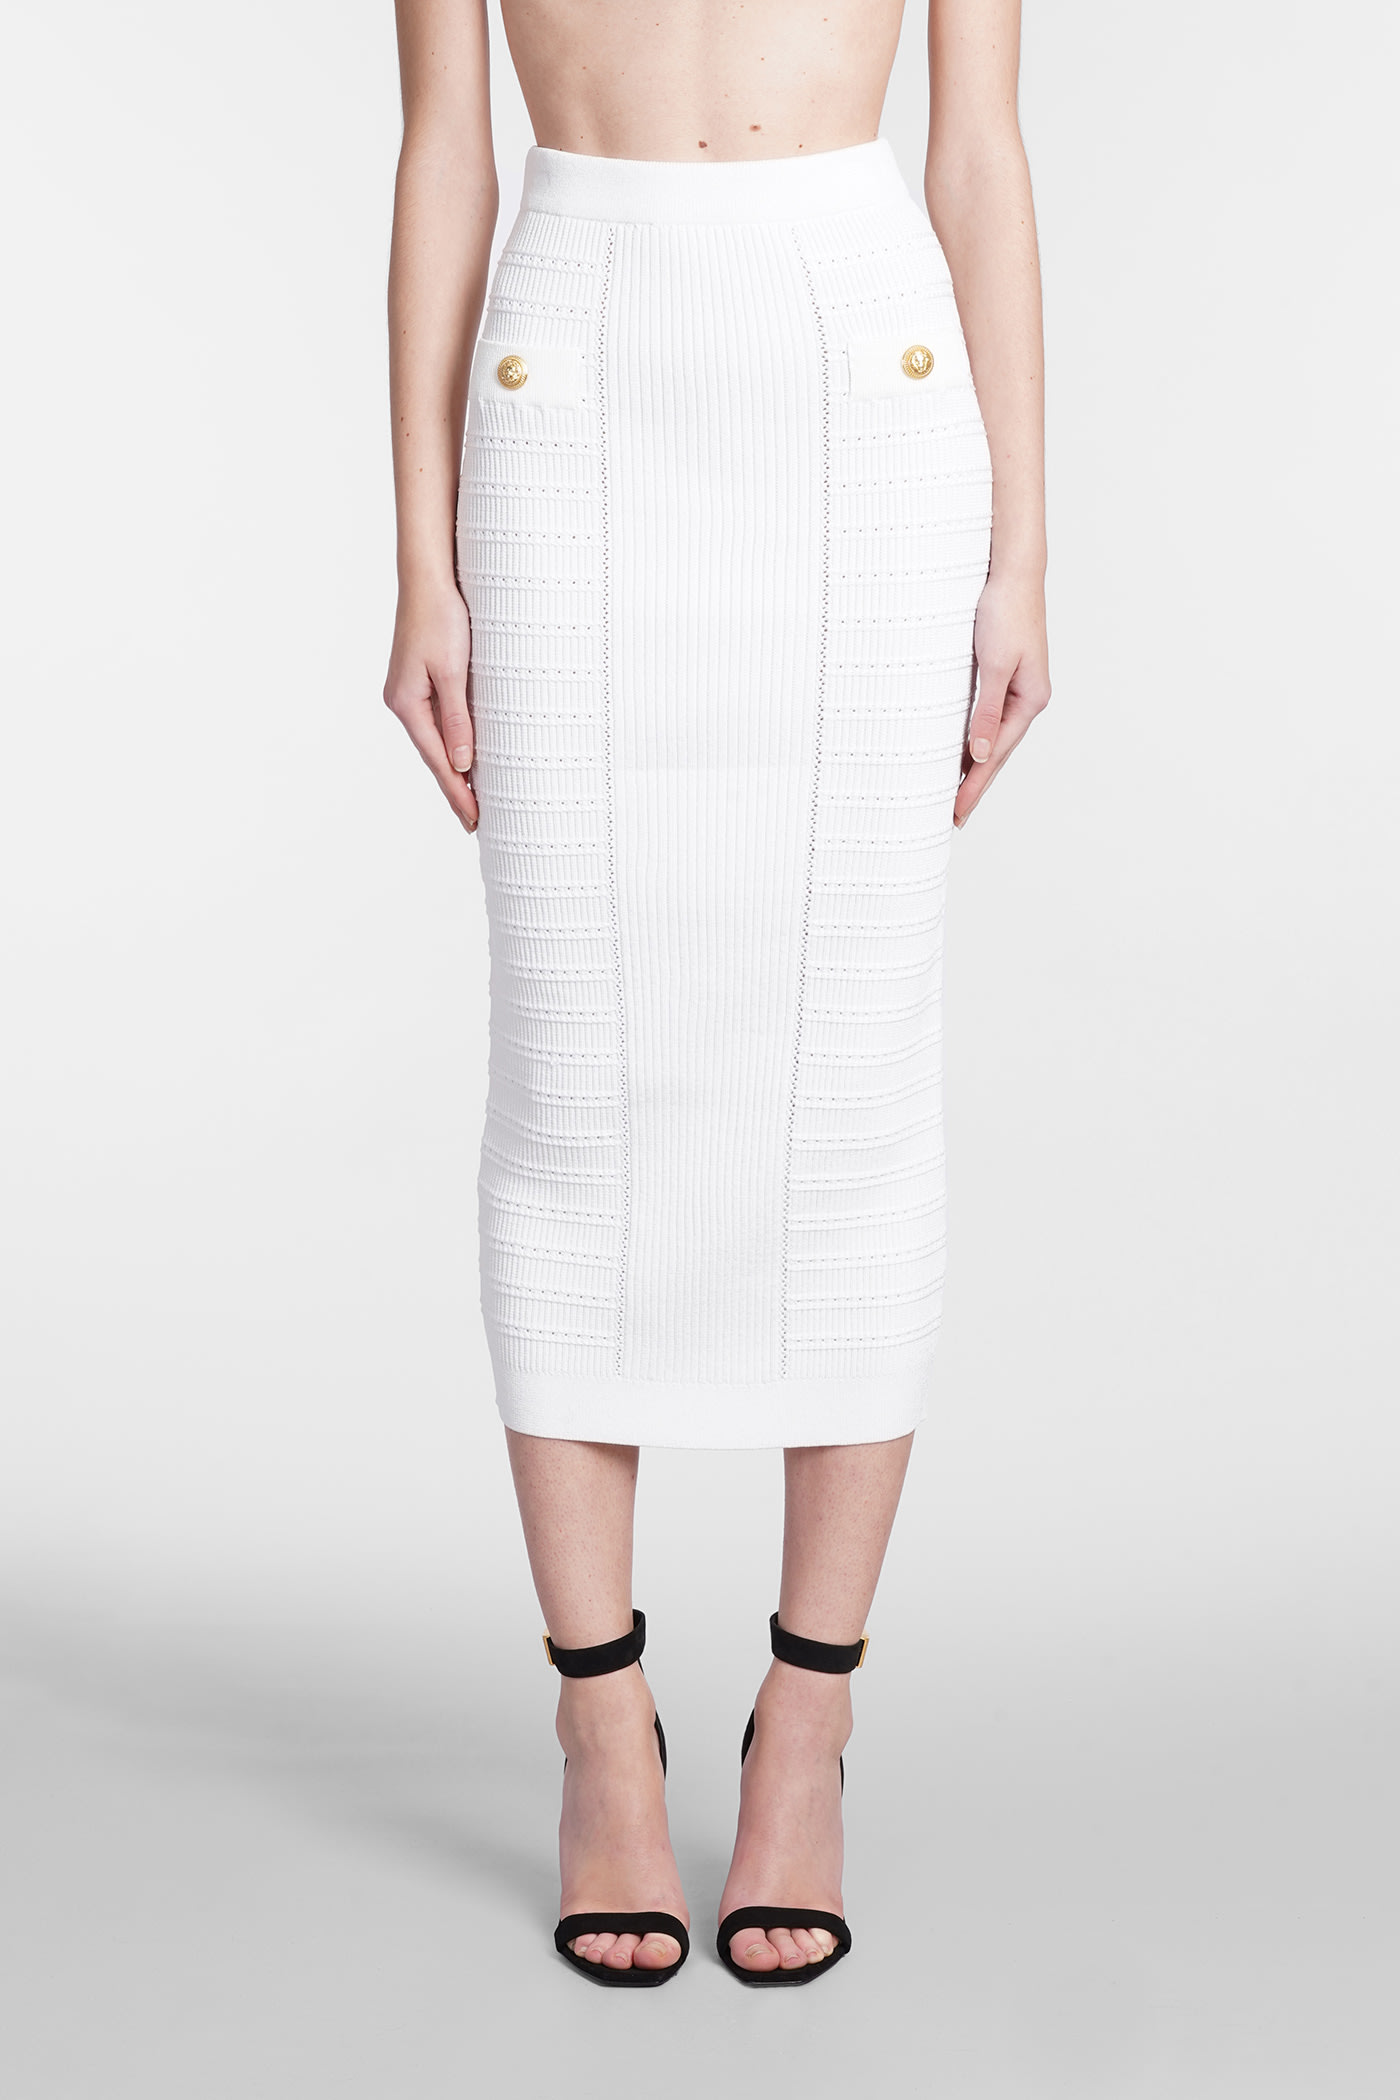 Balmain Skirt In White Viscose